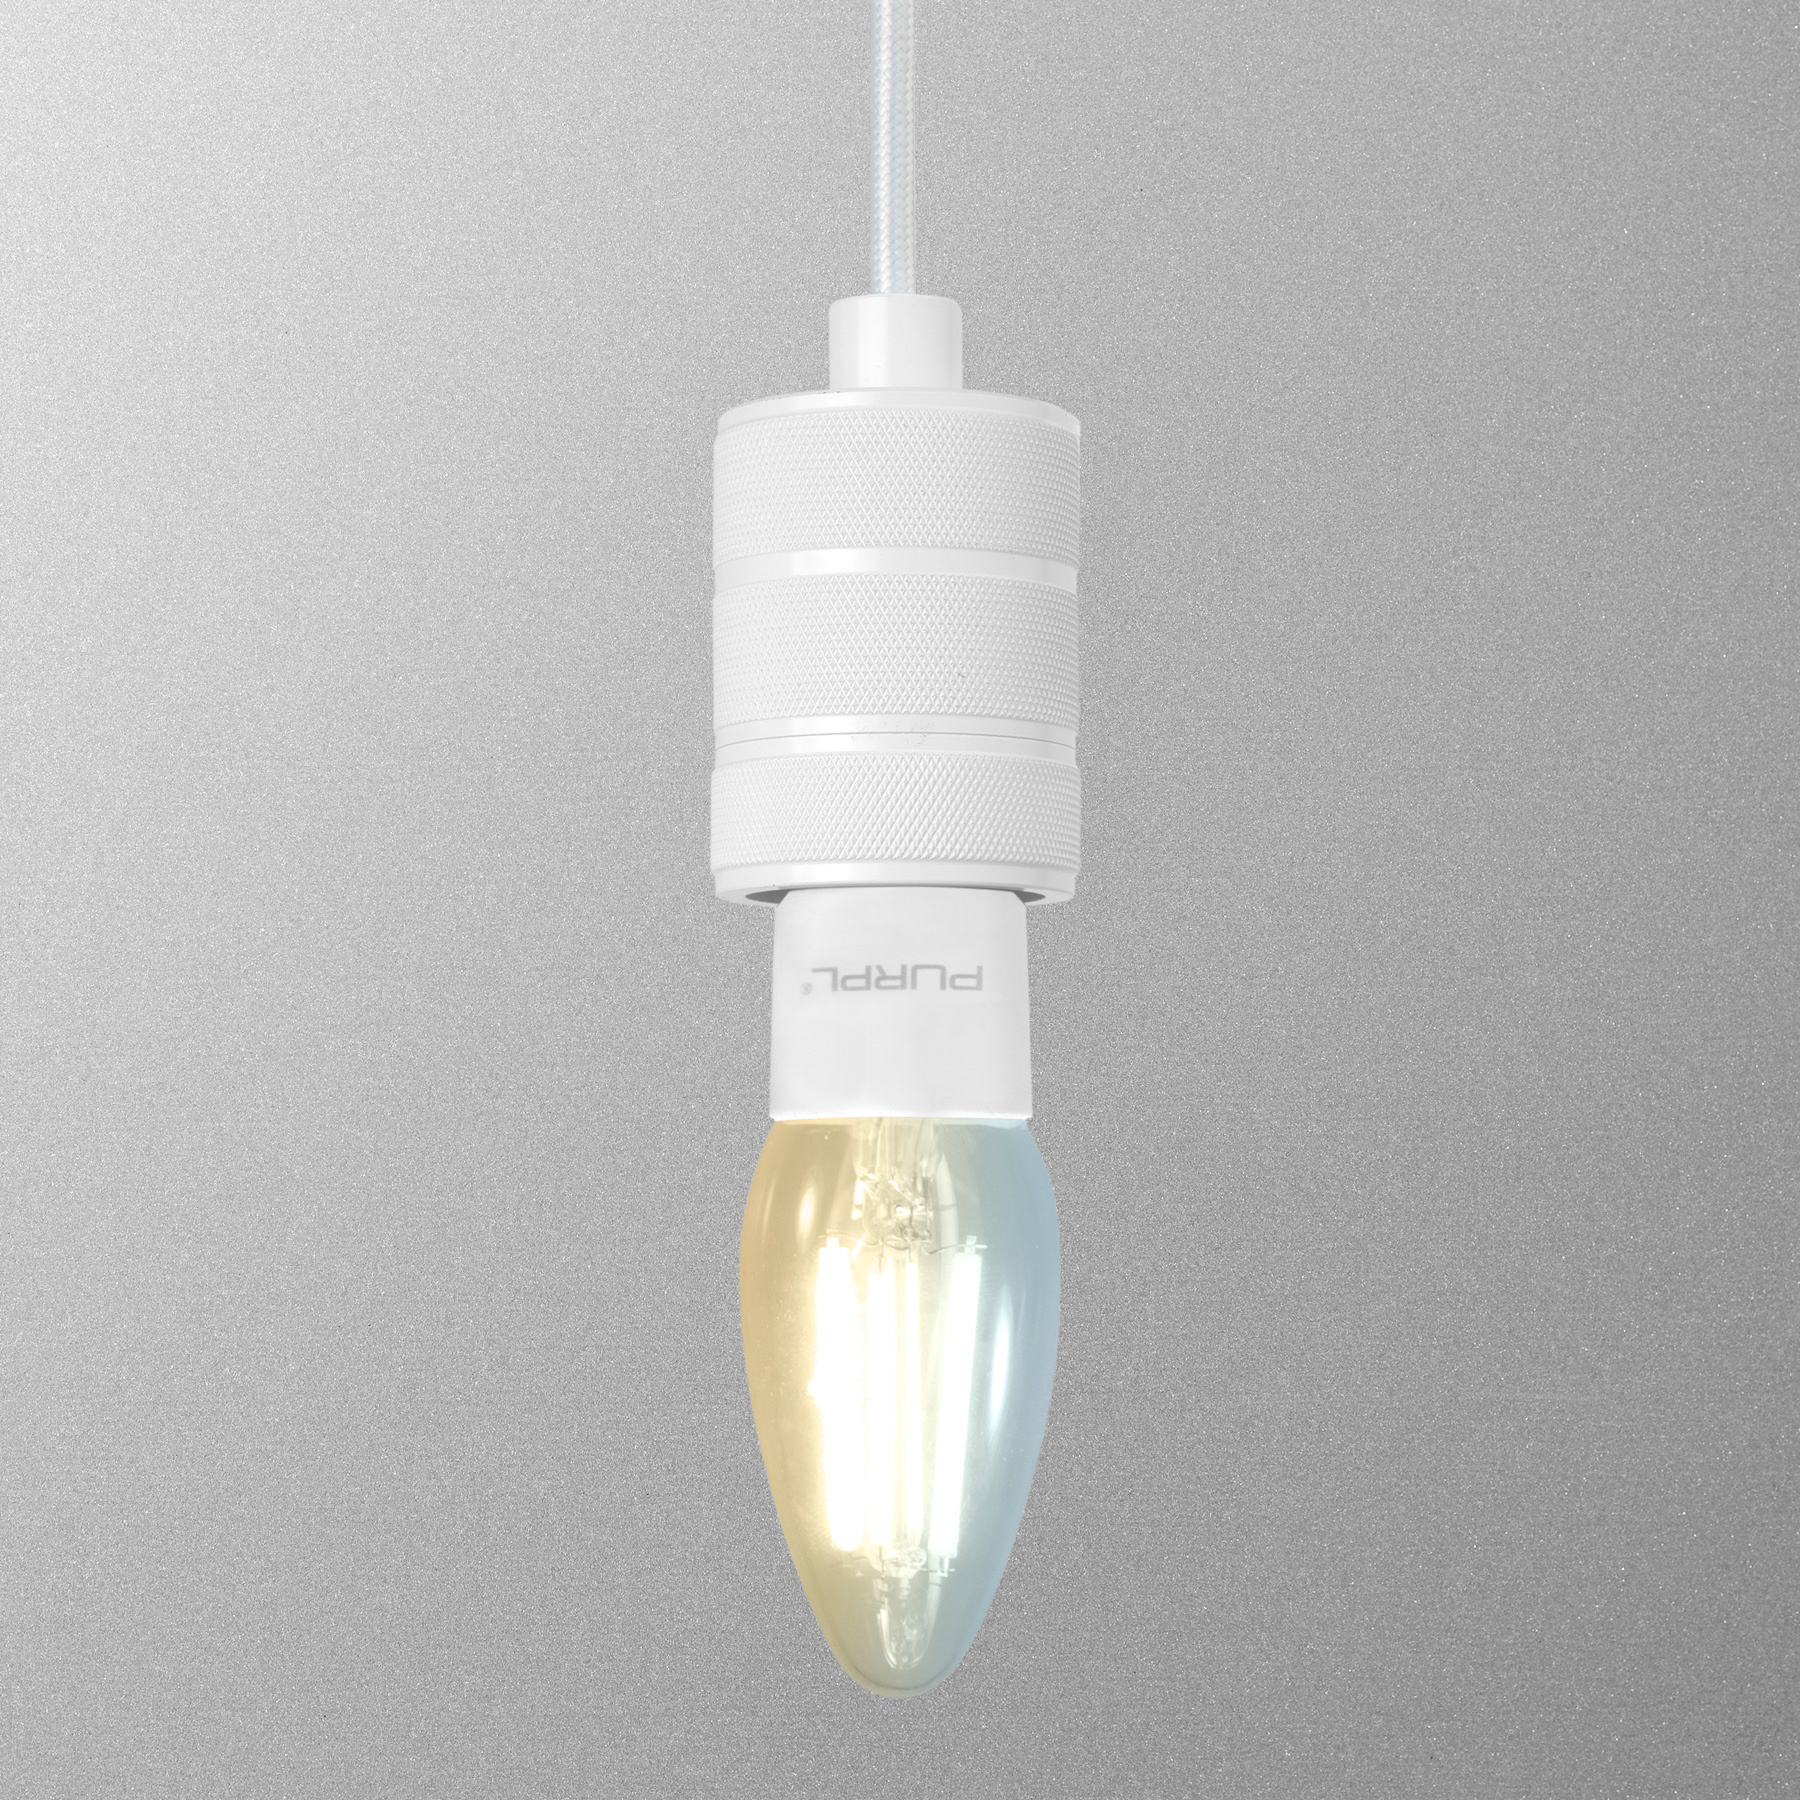 Somatische cel Salie meten LED lamp e27 koud wit| LED24 - LED24